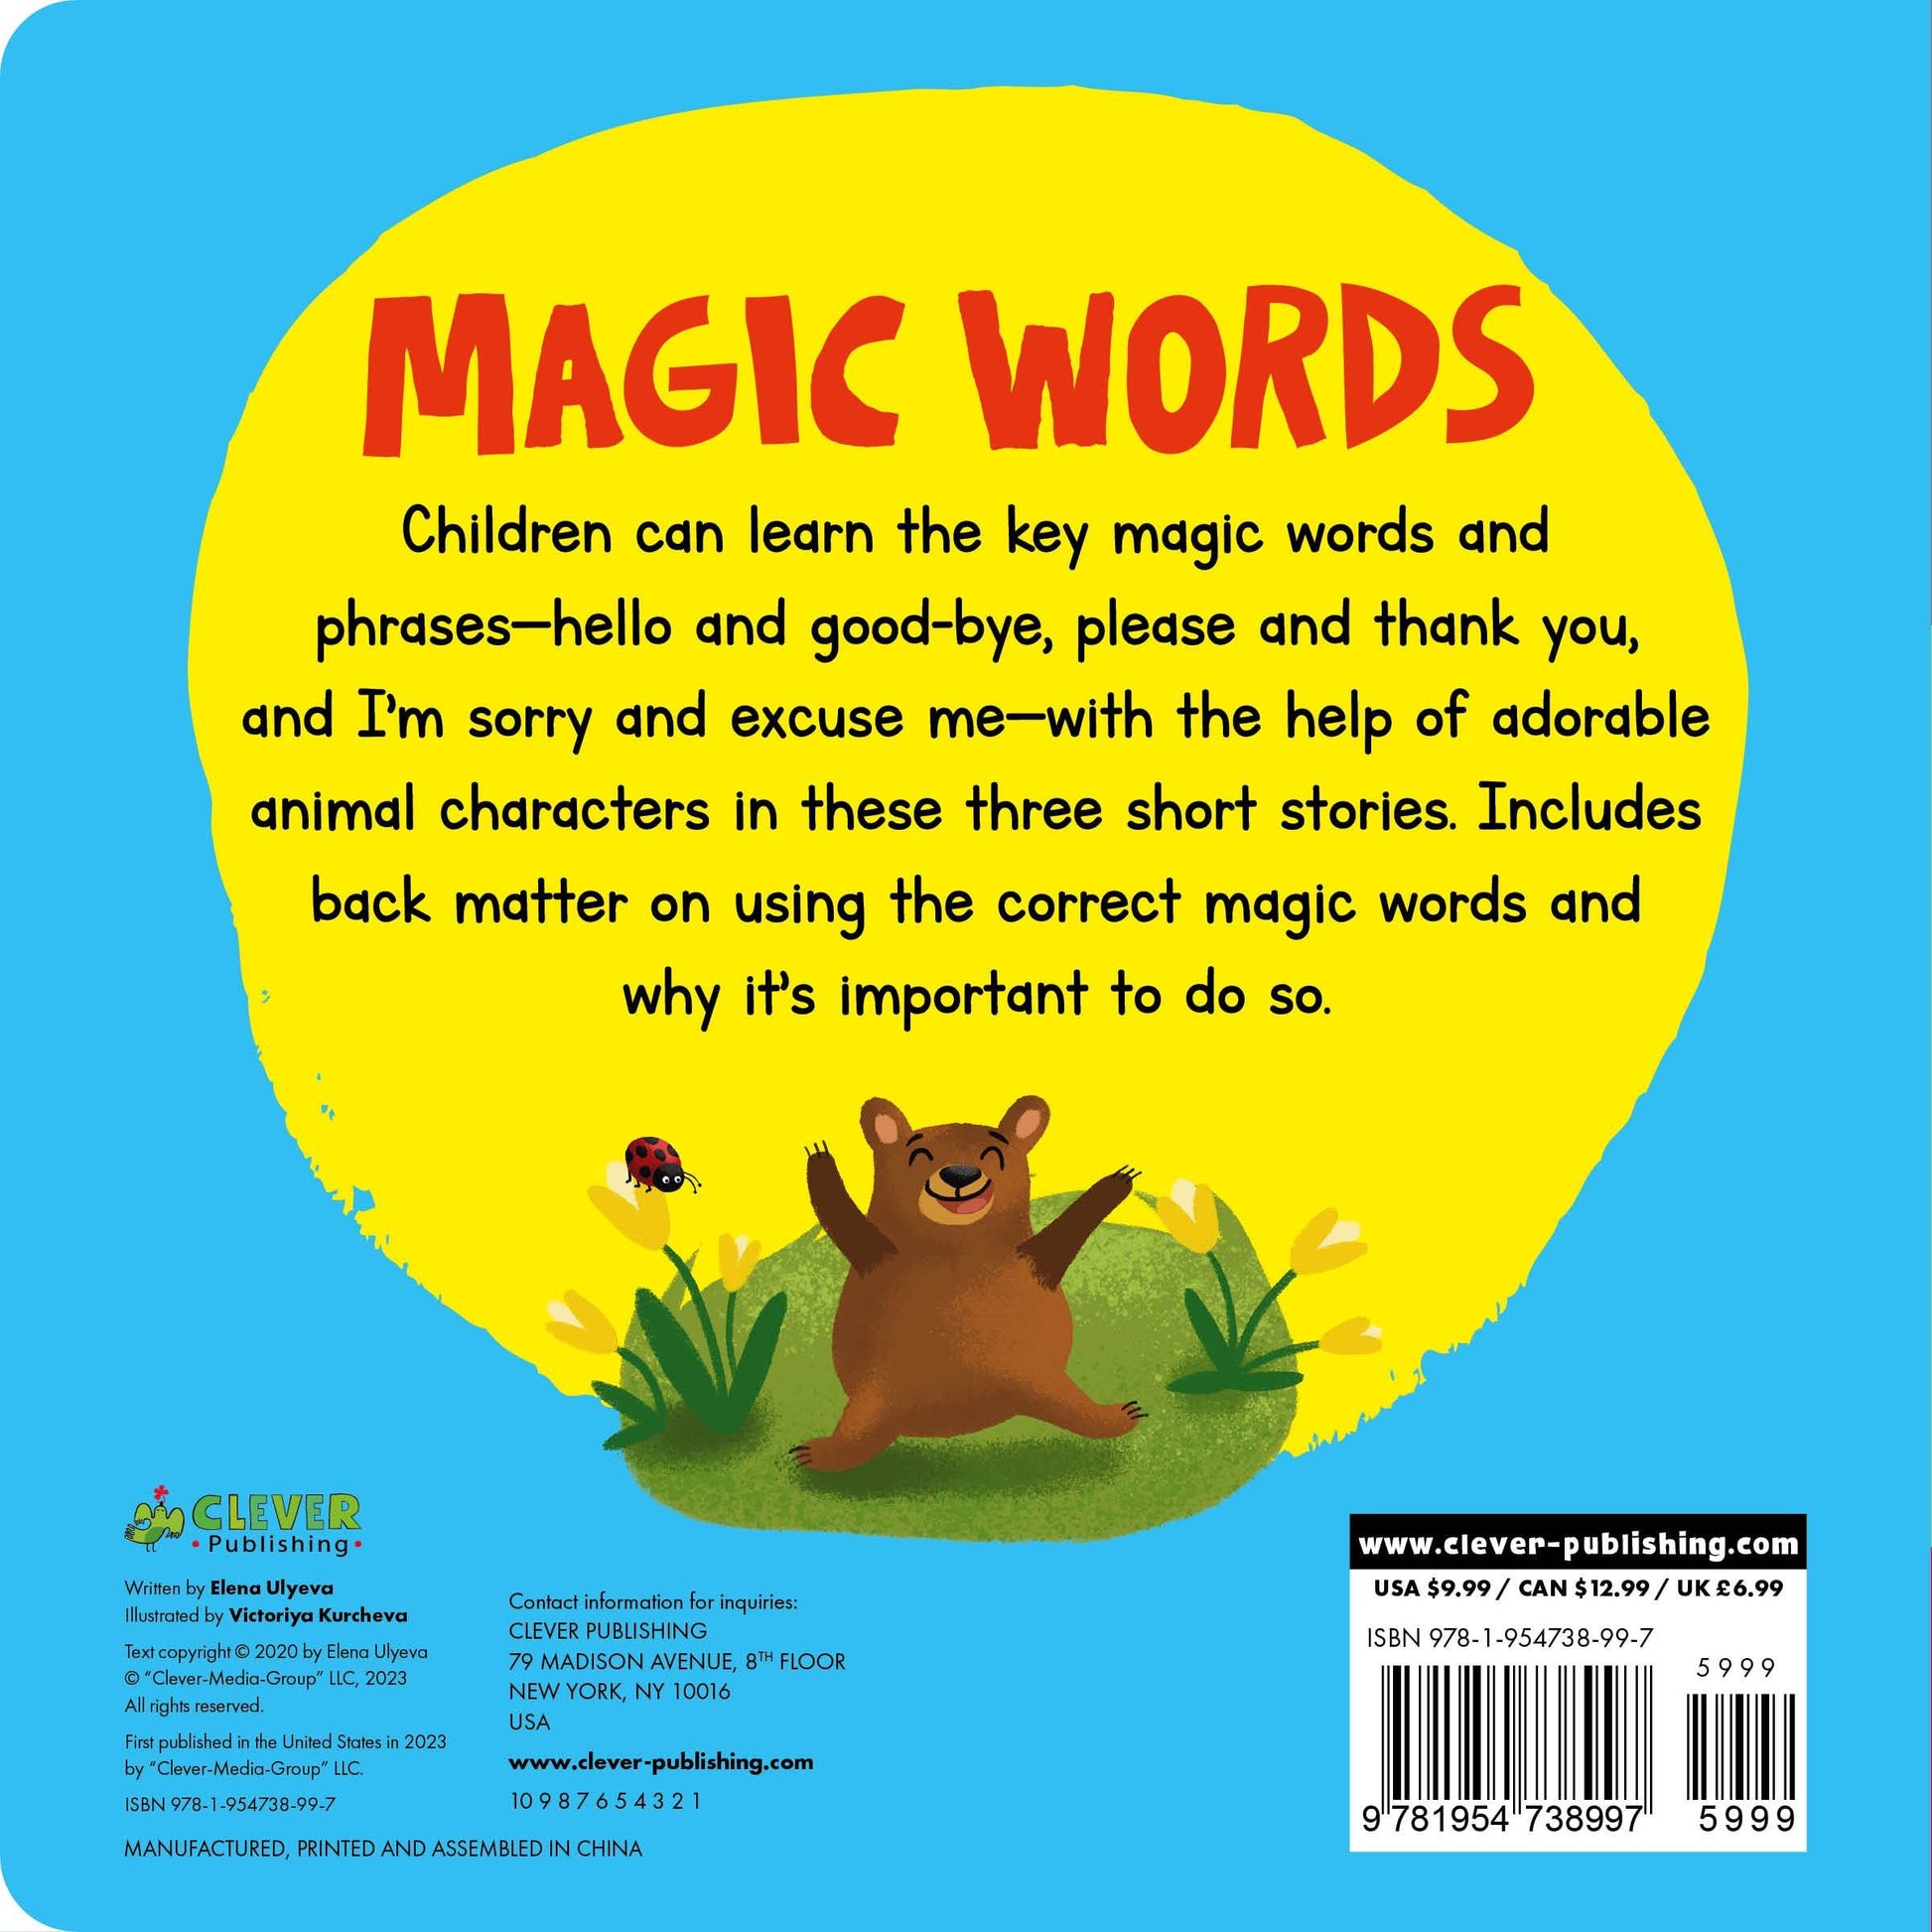 Magic Words - Картон - Сlever-publishing 29.00